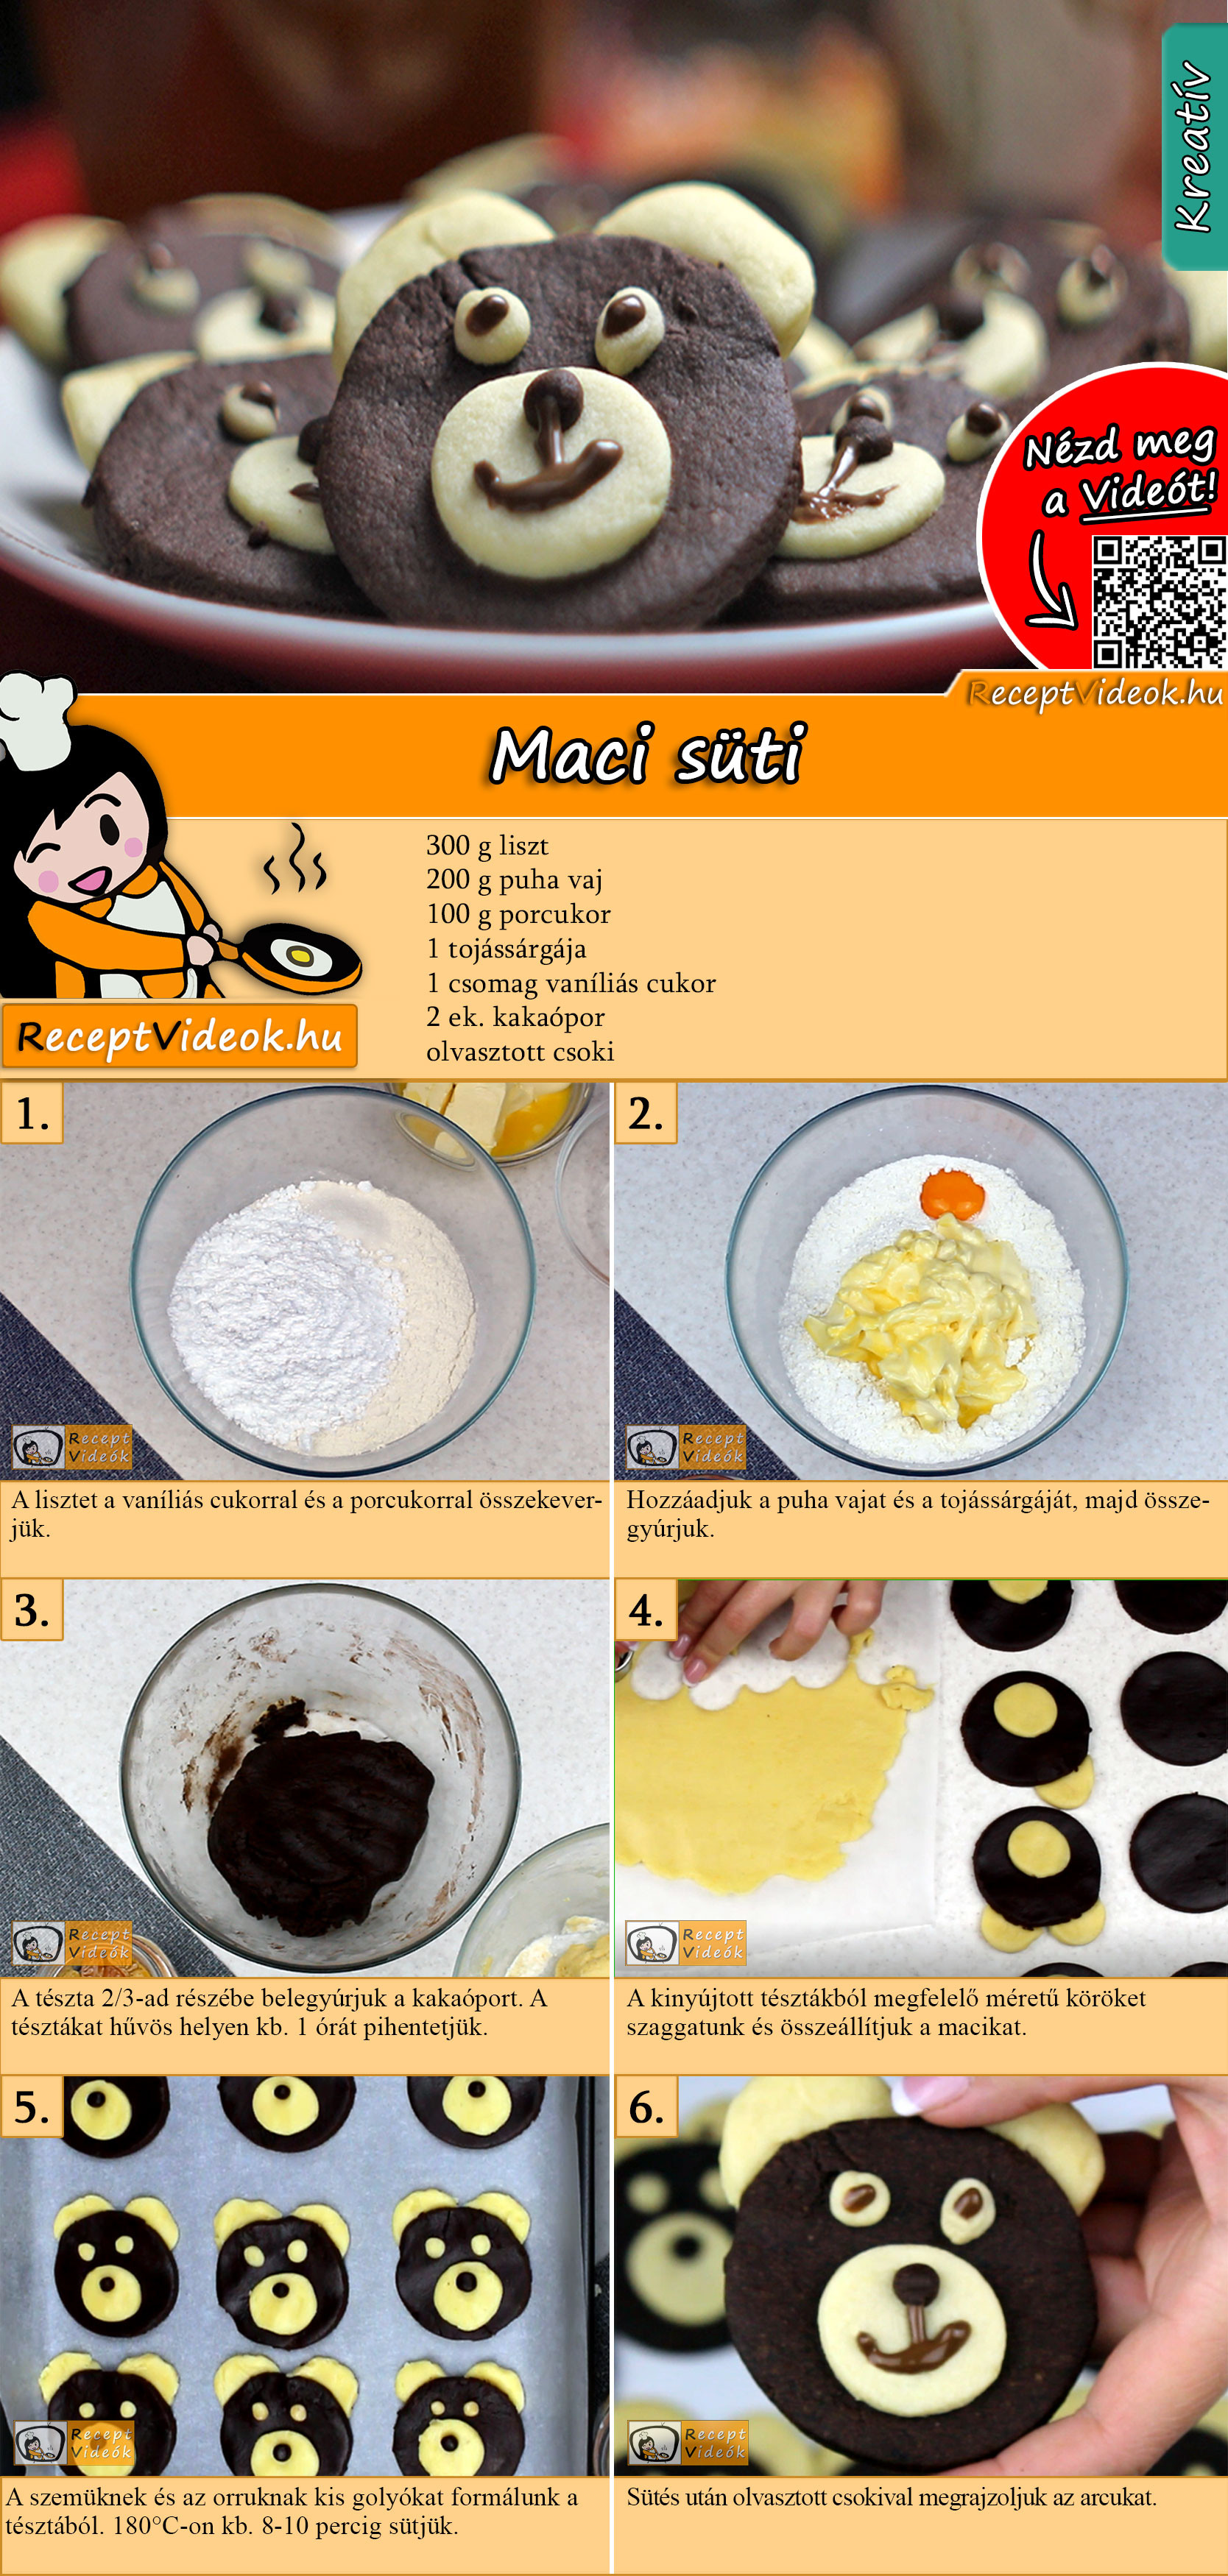 Maci süti recept elkészítése videóval